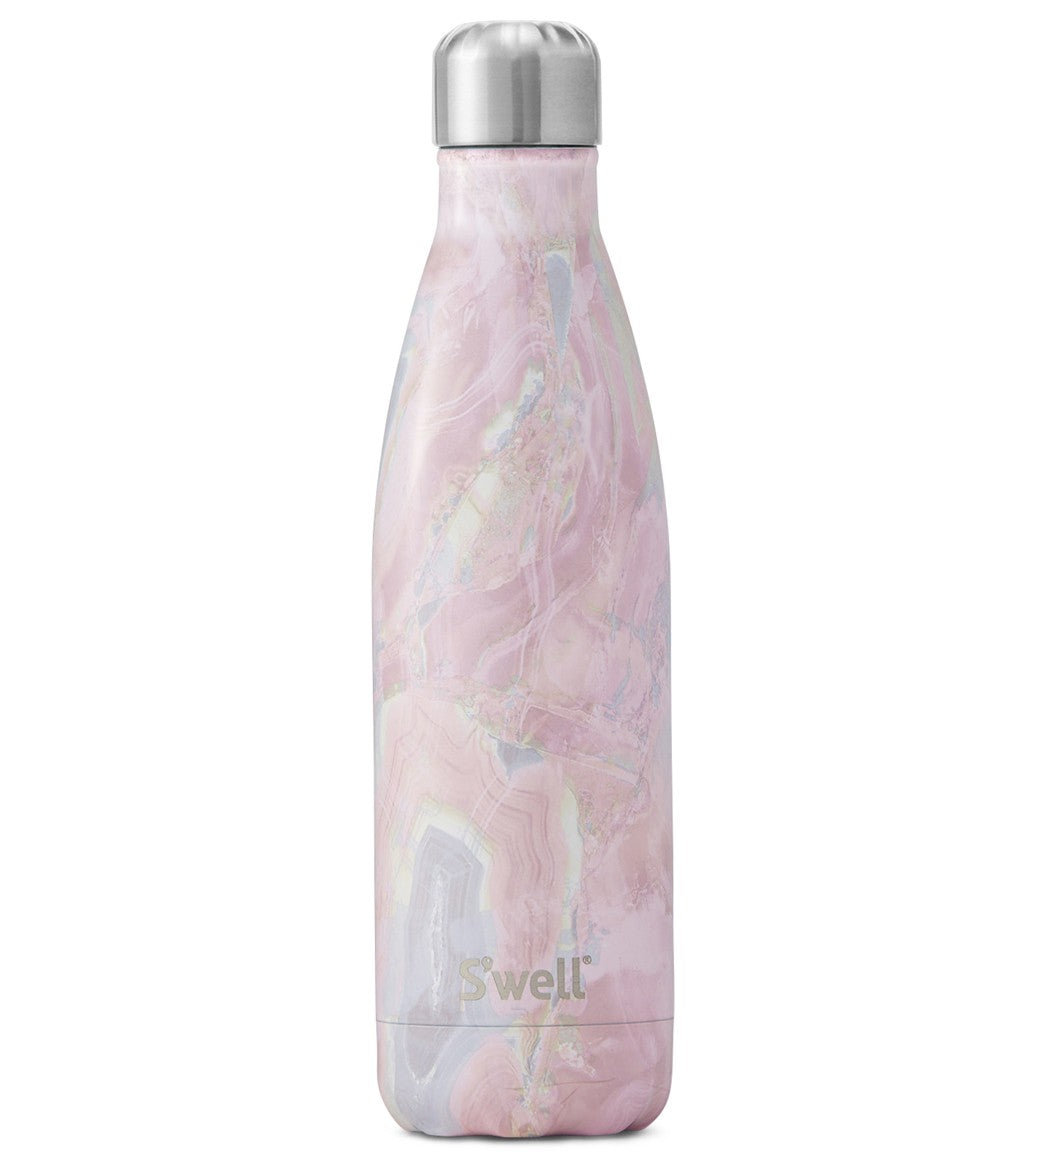 S'well Geode Rose Bottle, 17 oz.